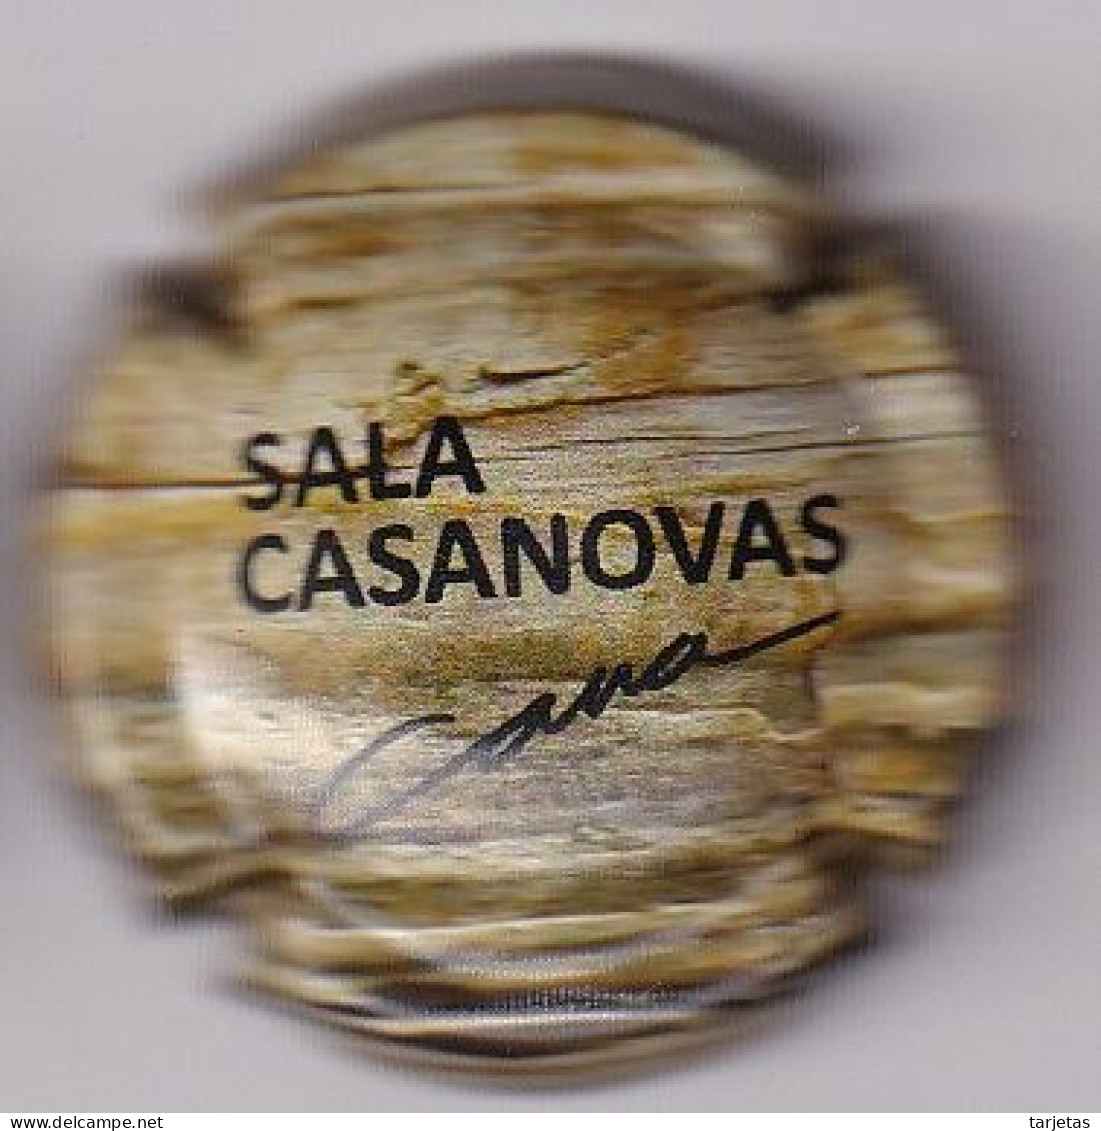 PLACA DE CAVA SALA CASANOVAS (CAPSULE) - Placas De Cava